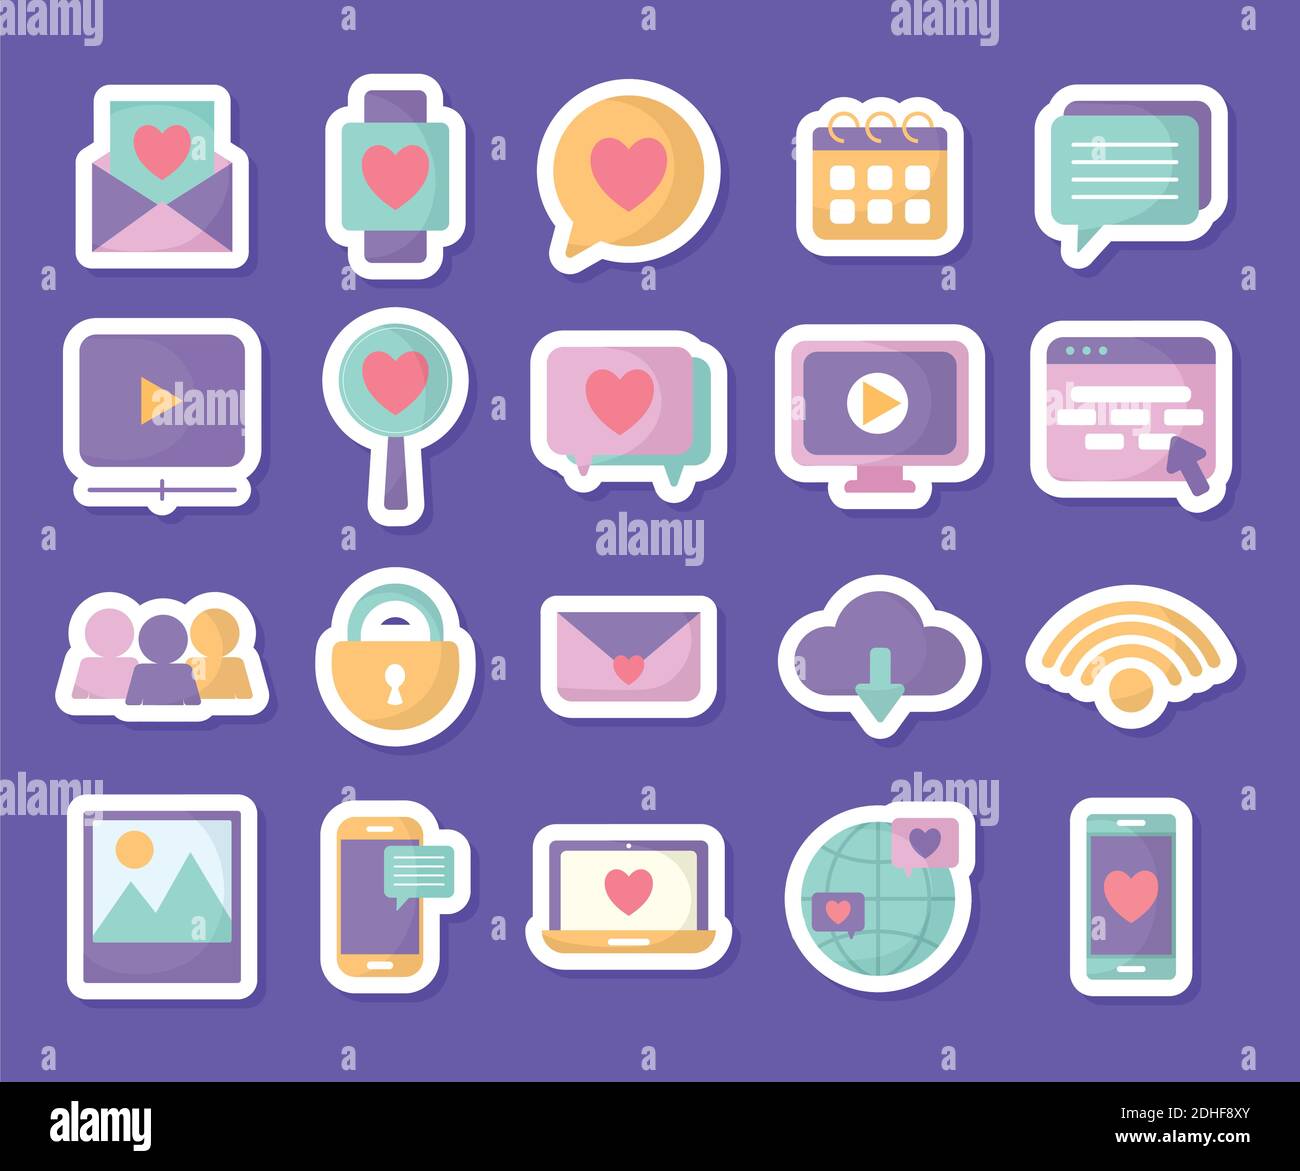 groupe d'icônes de réseaux sociaux sur fond violet Illustration de Vecteur